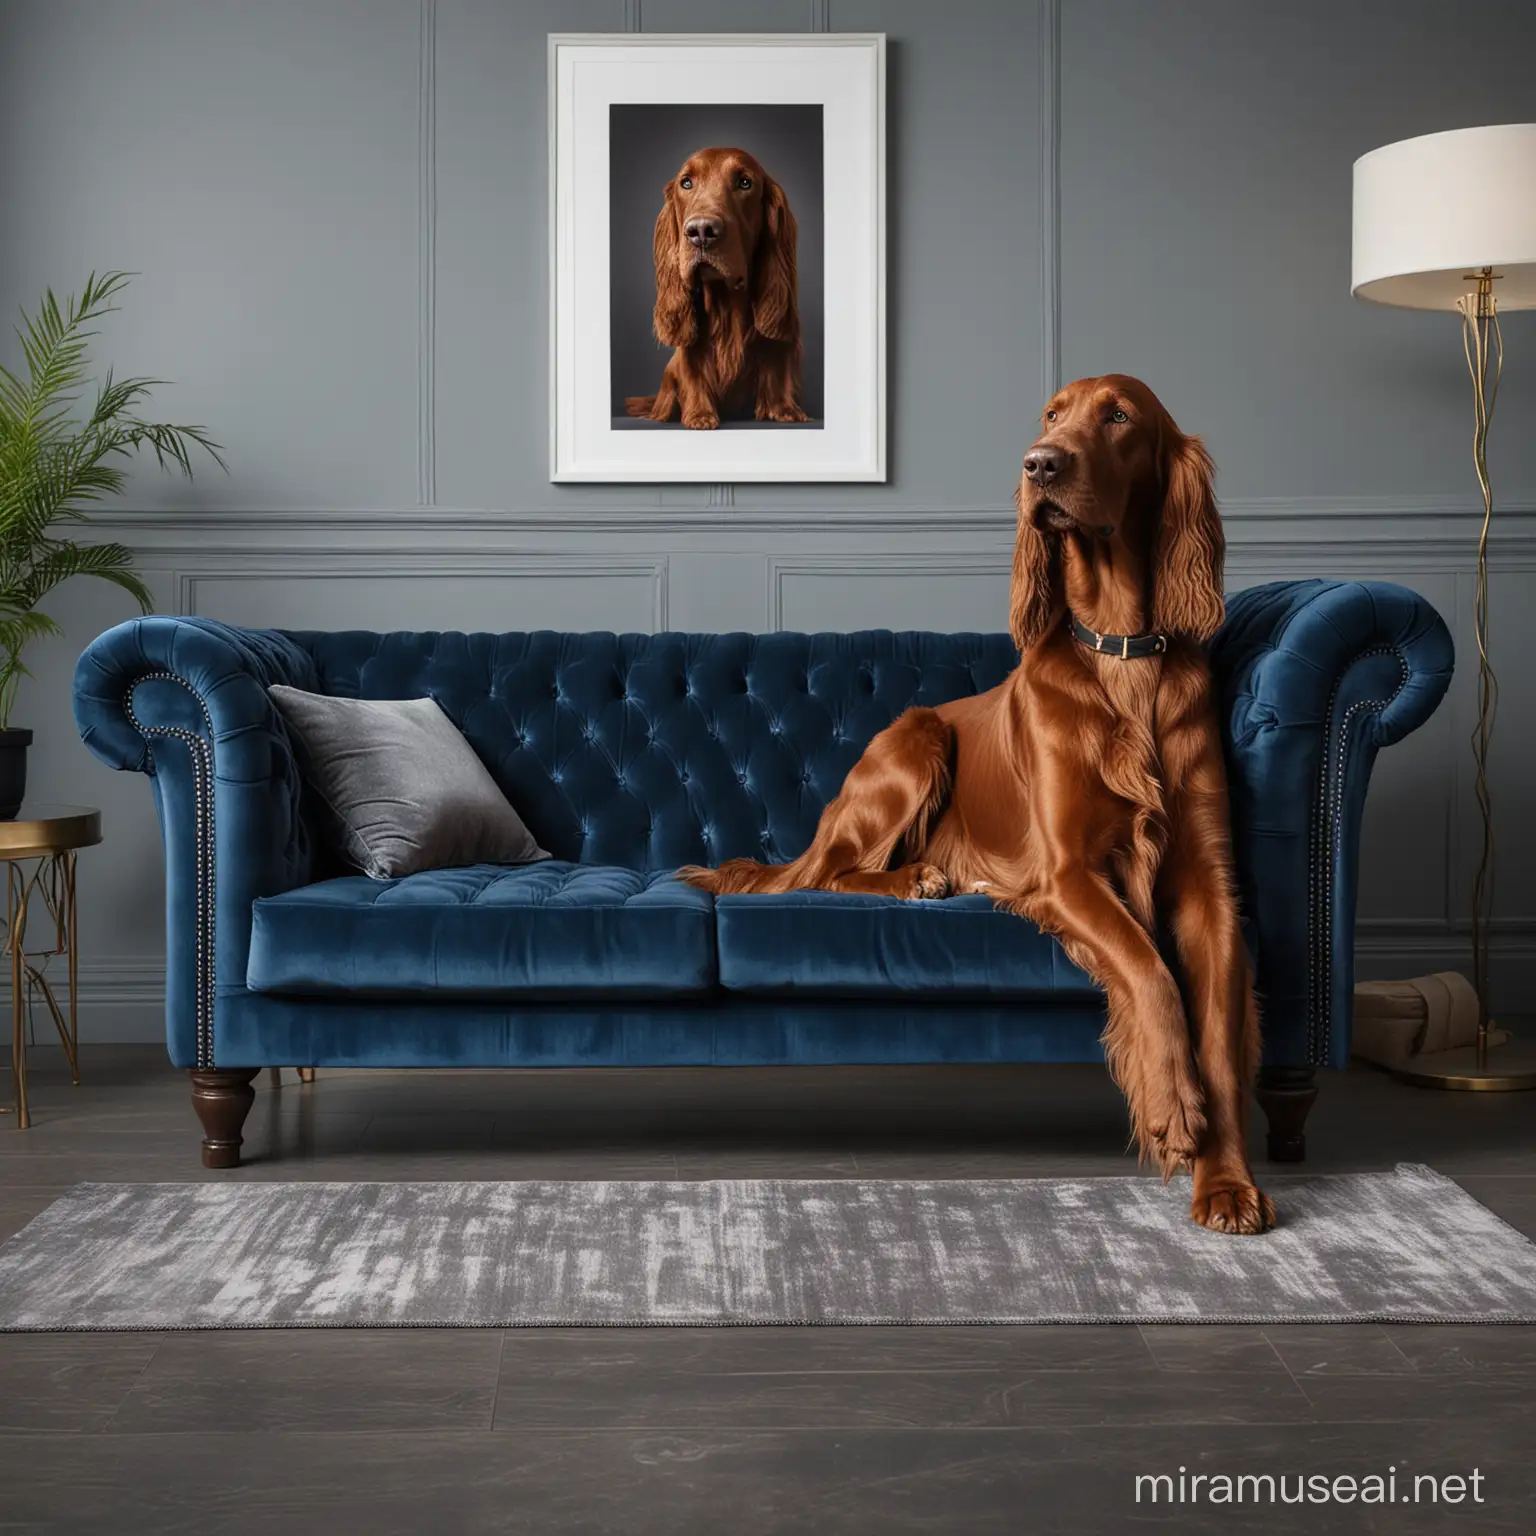 Irish Setter Dog Relaxing on Chic Modern Blue Sofa in Glamorous Living Room